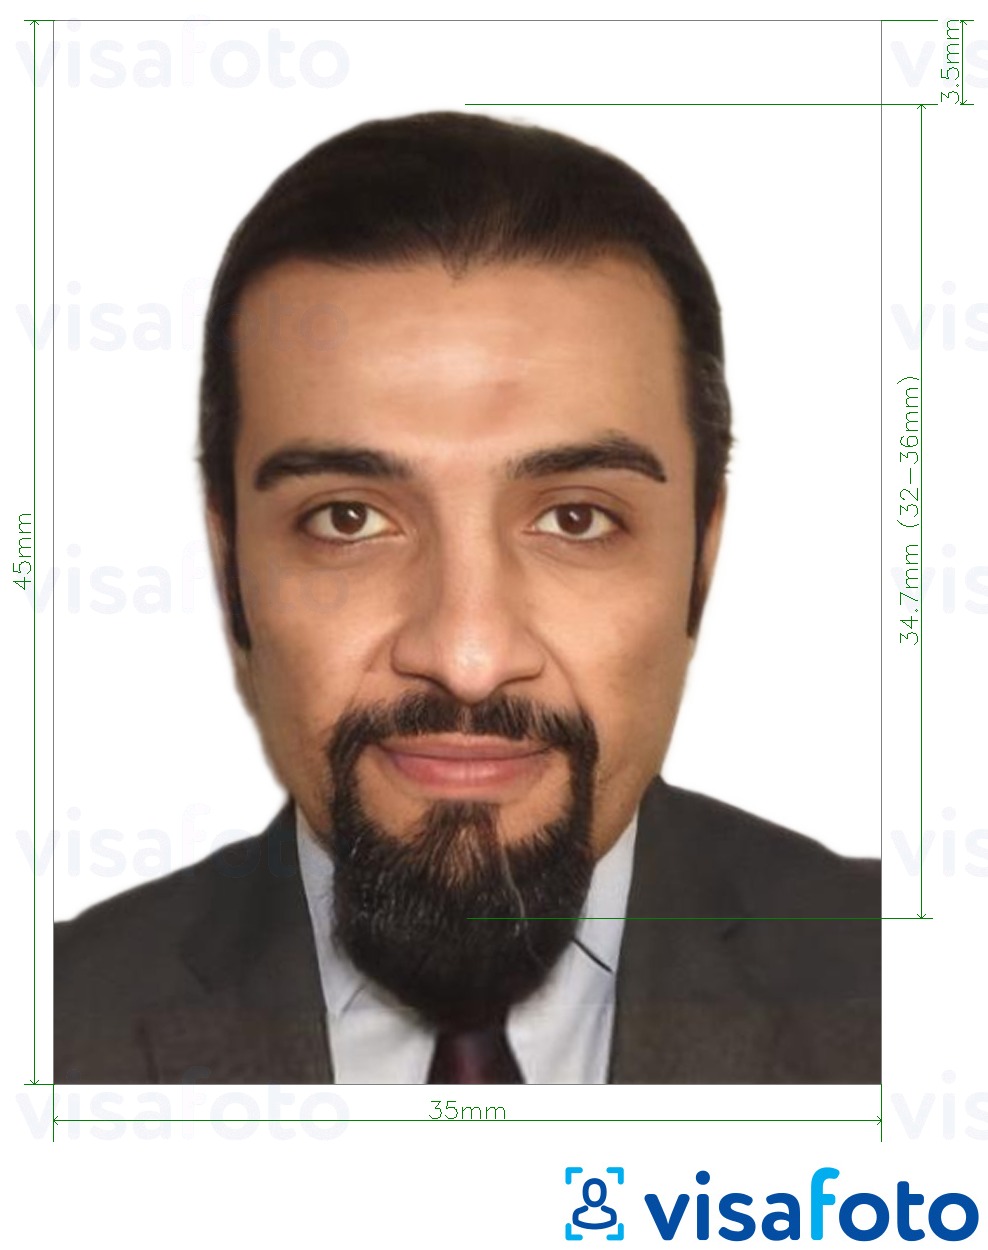 Contoh dari foto untuk Visa Aljazair 35x45 mm (3,5x4,5 cm) dengan ukuran spesifikasi yang tepat